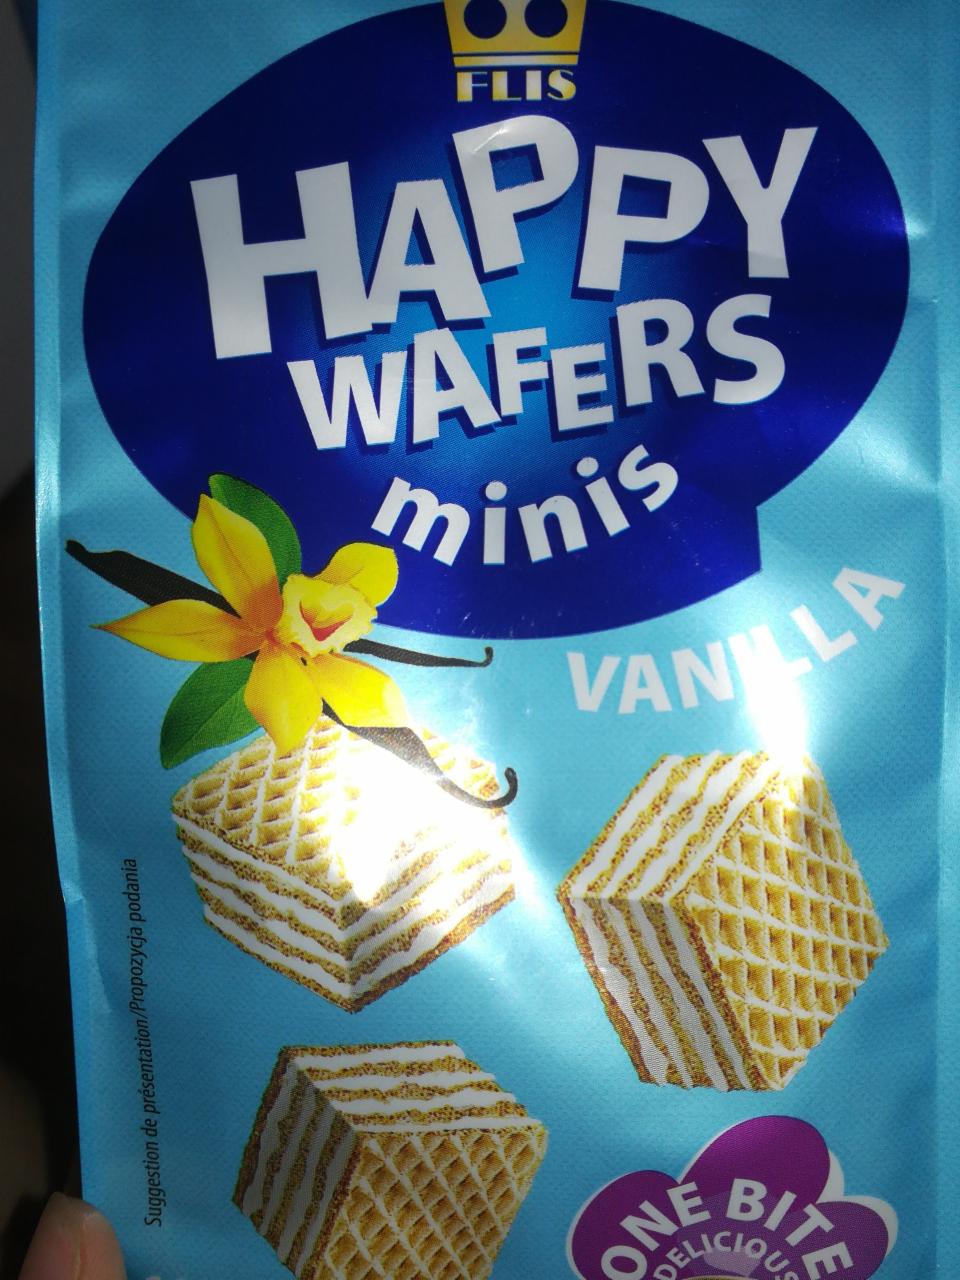 Zdjęcia - Happy Wafers minis flis